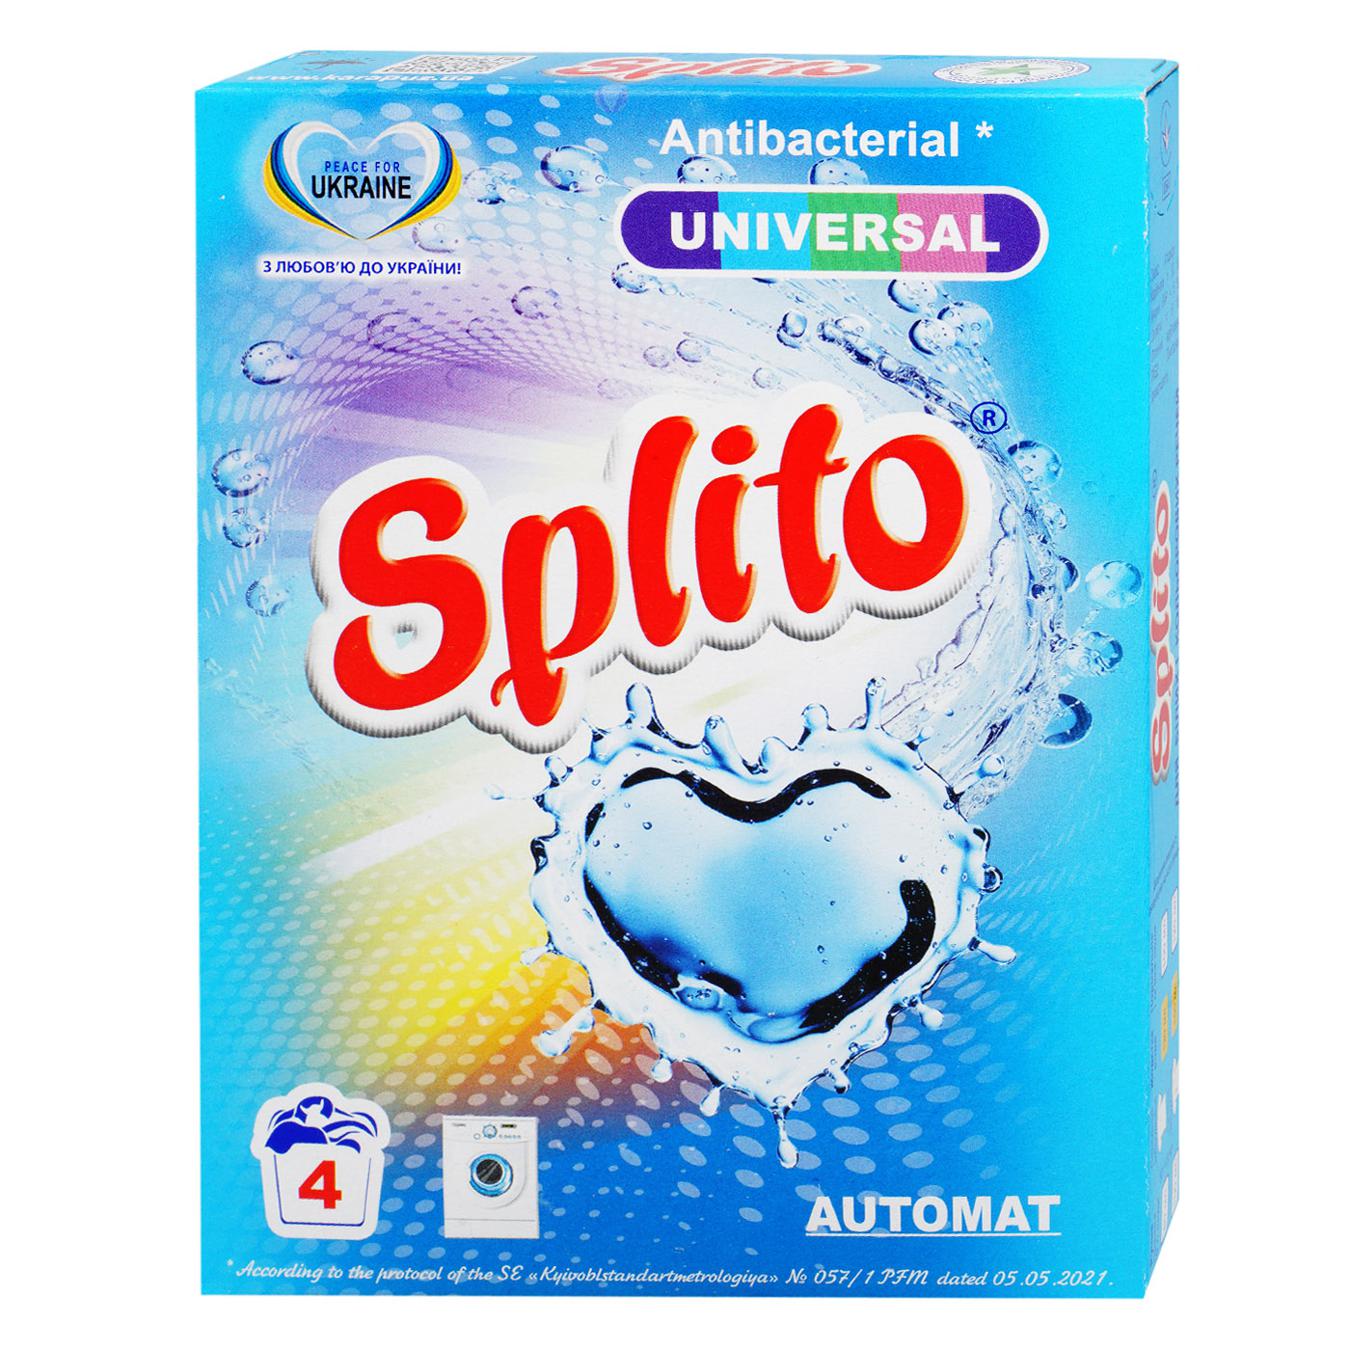 Порошок Splito Universal для прання автомат 350г